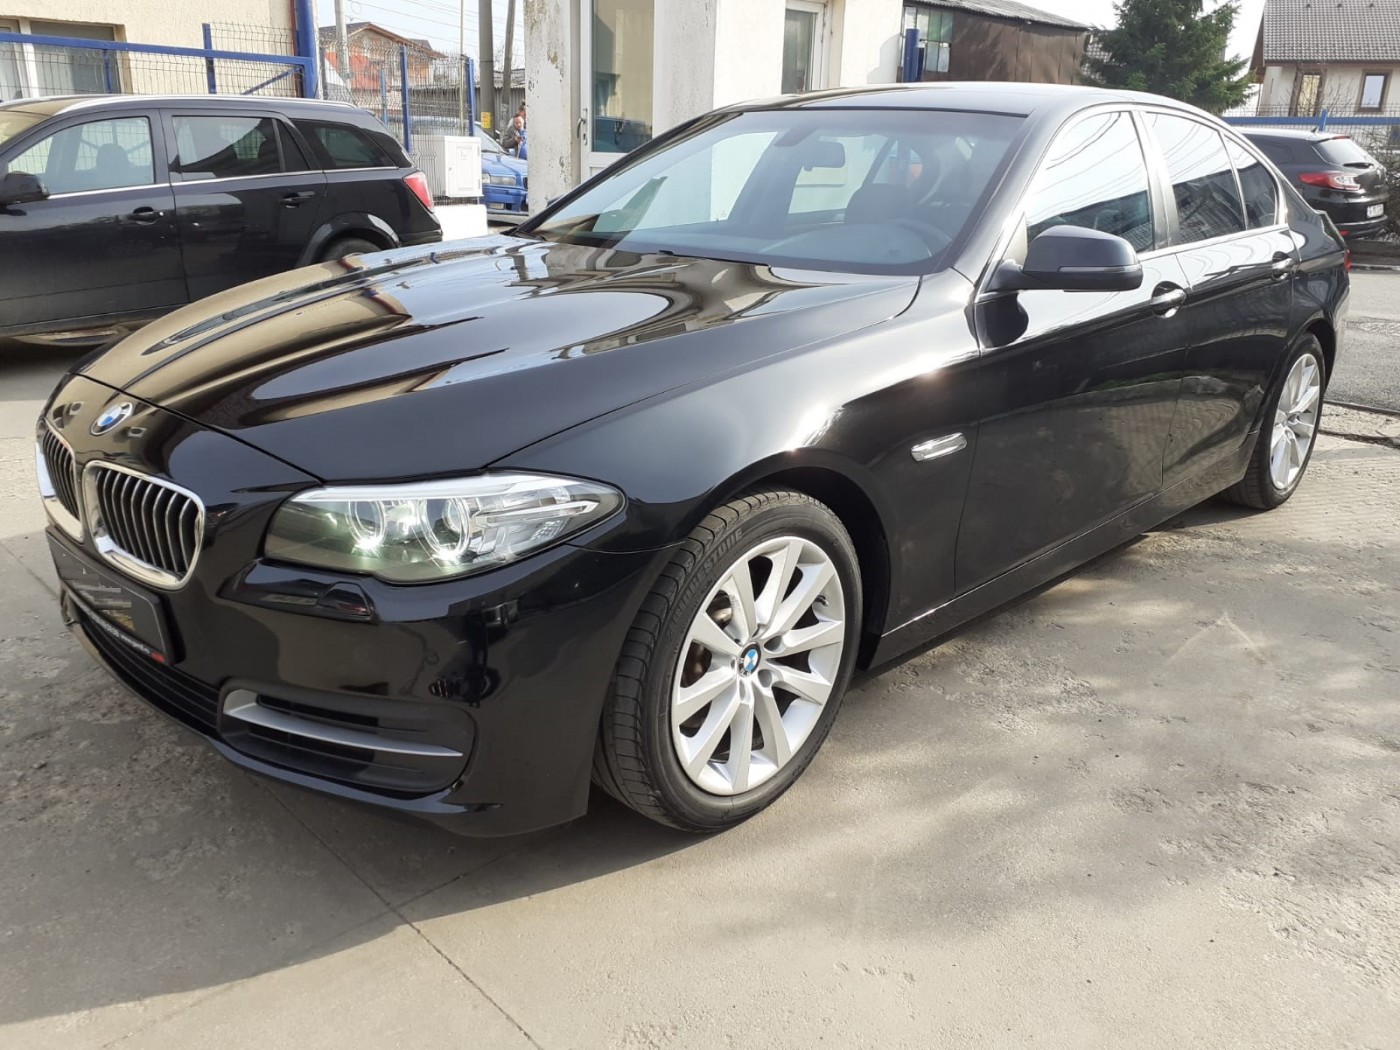 BMW 520 163 CP 19490 €, 140815 km, anul 2014, culoare negru